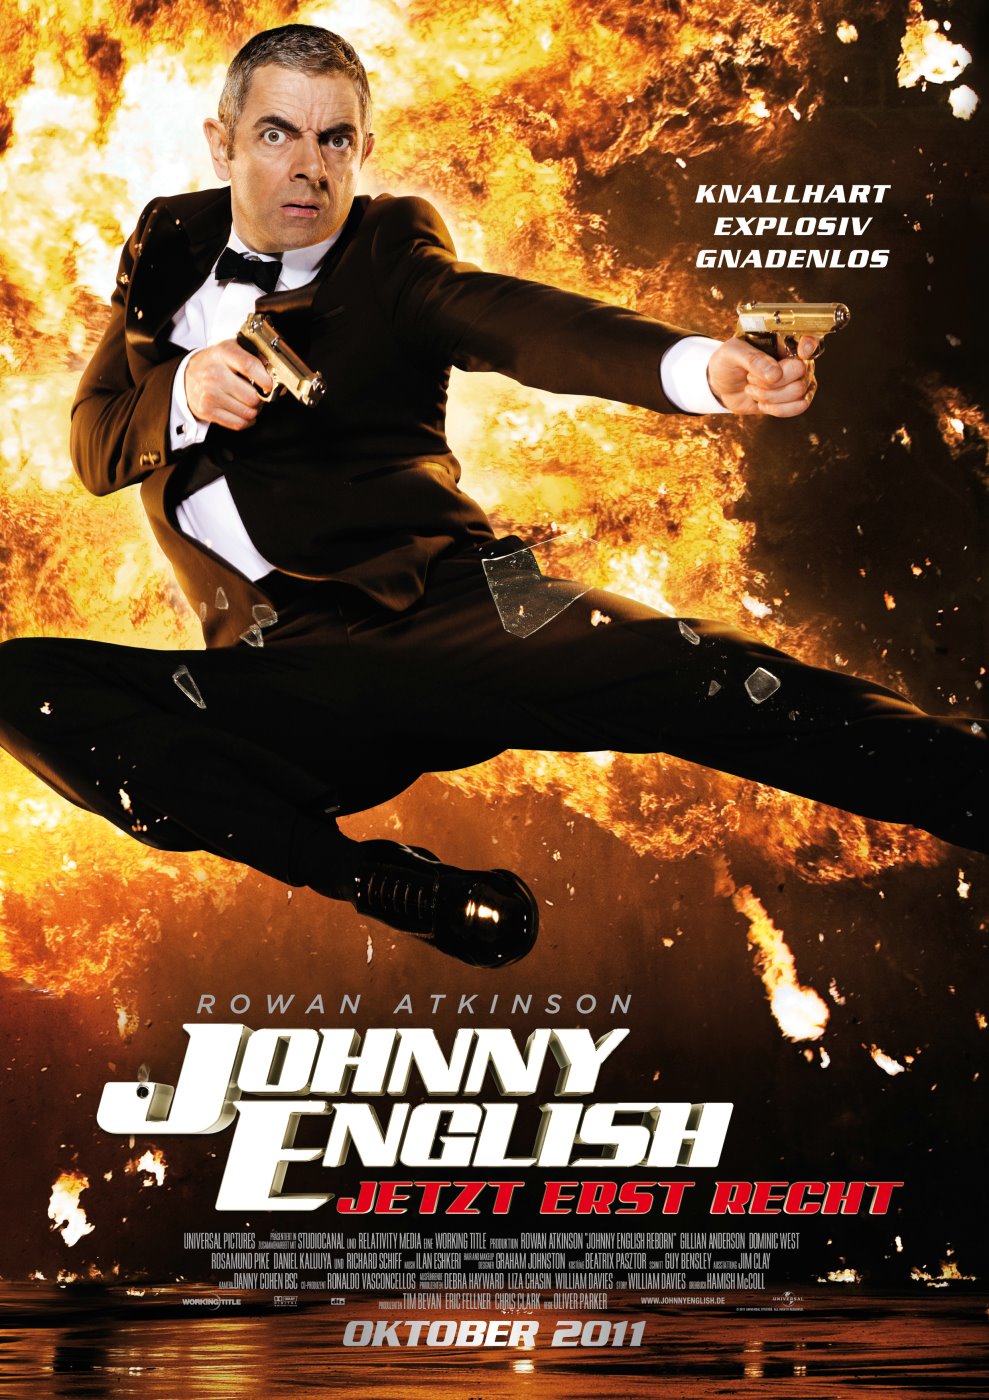 Johnny English, le retour - Film 2009 | Cinéhorizons